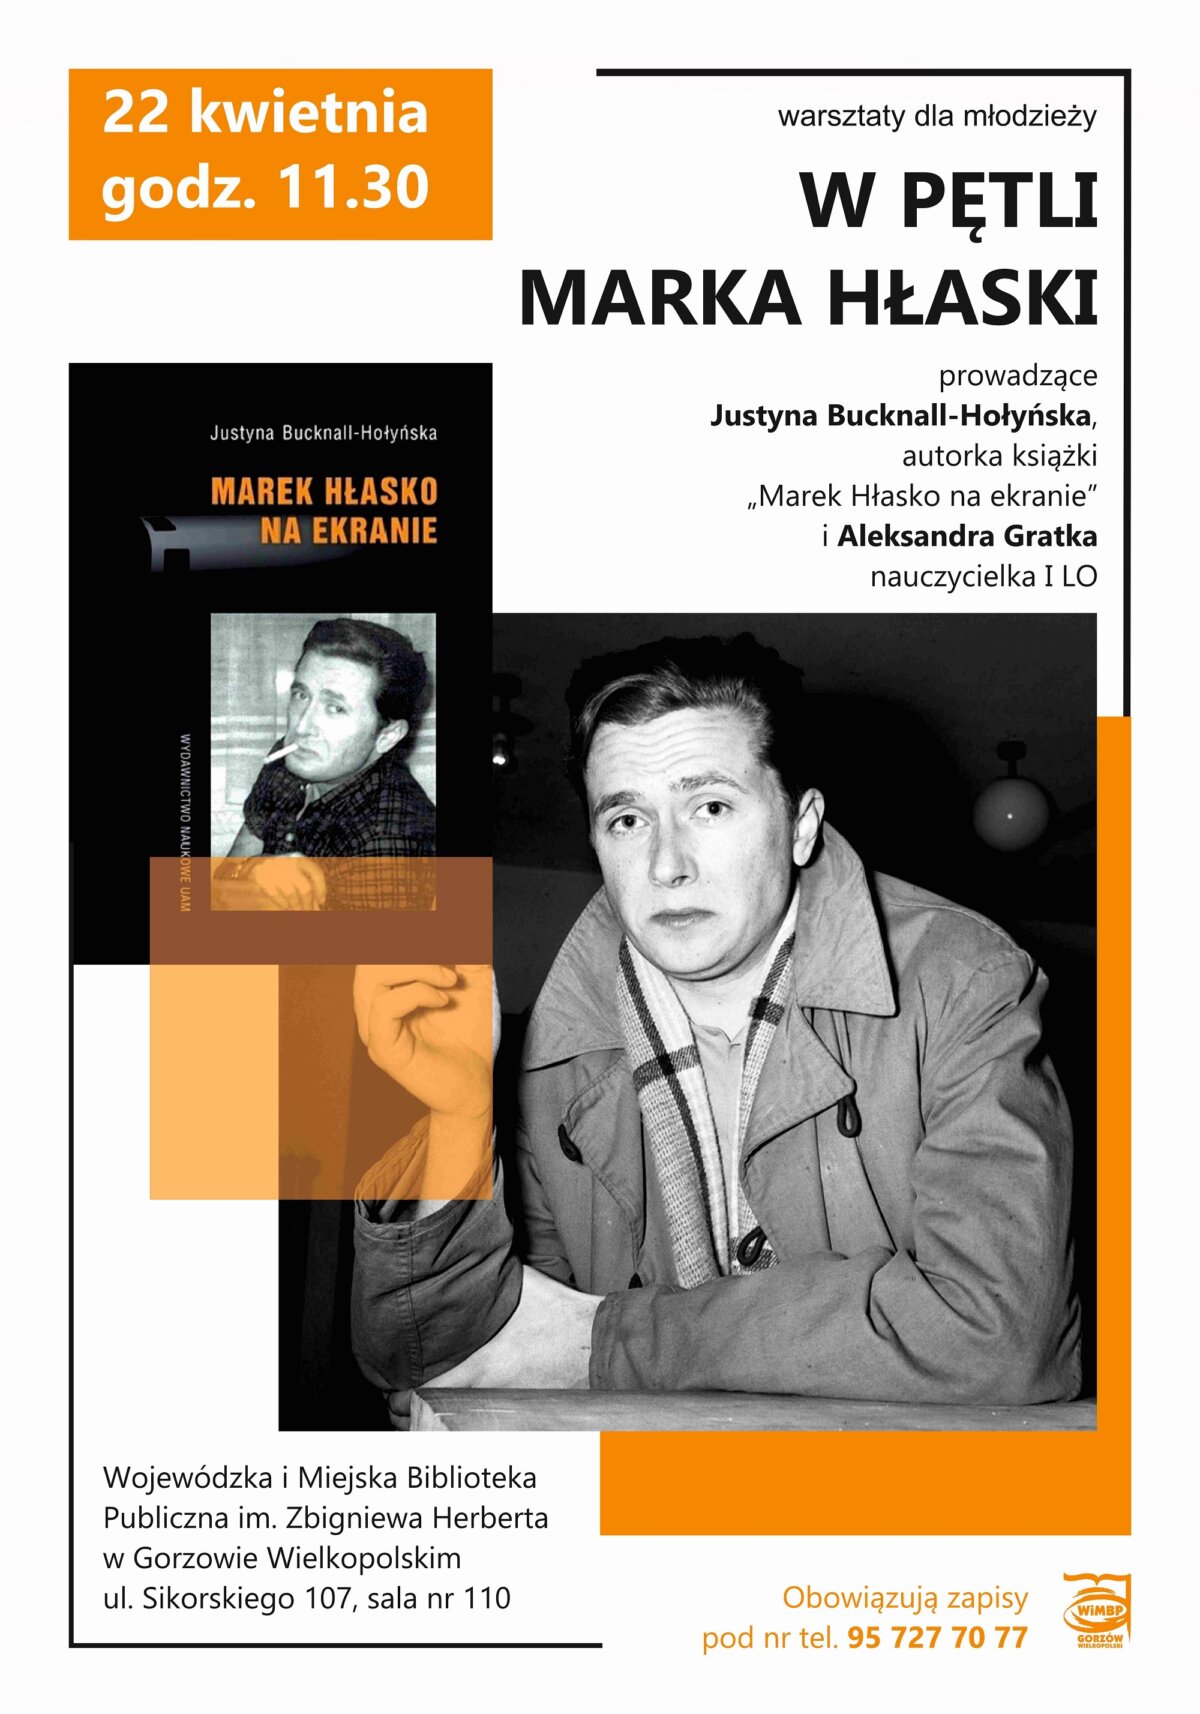 plakat promujący wydarzenie ze zdjęciami M. Hłaski w kolorystyce biało-czarno-pomarańczowej